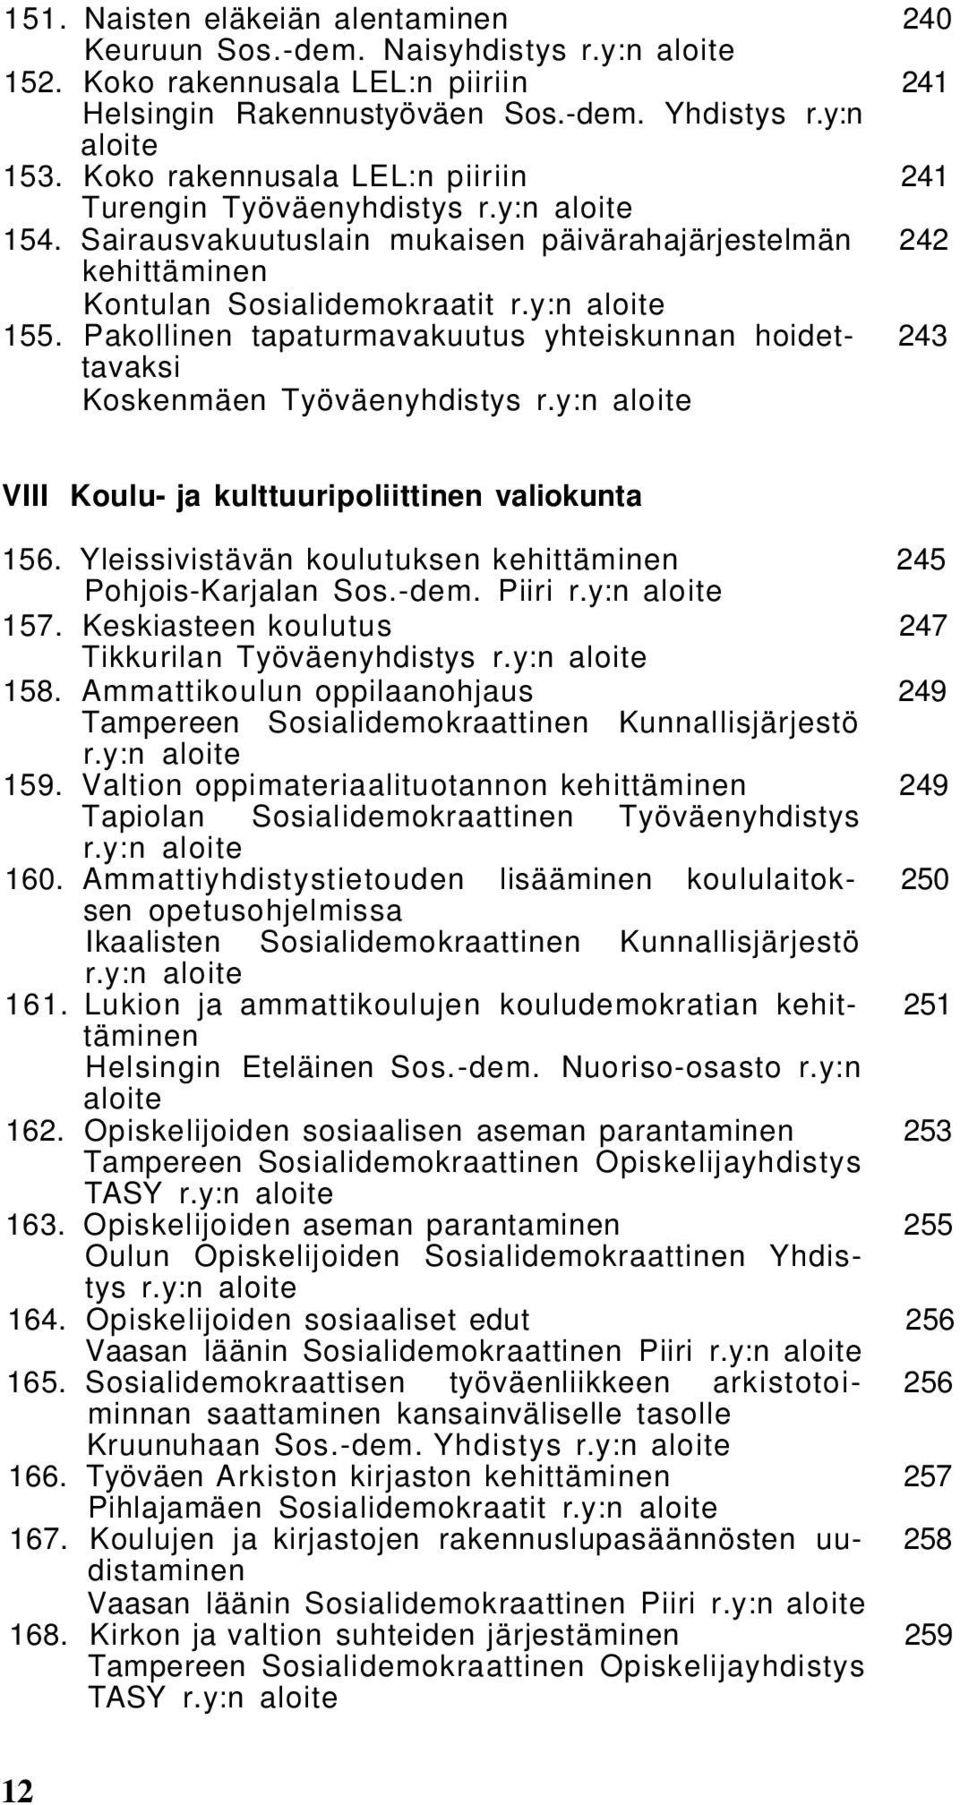 Pakollinen tapaturmavakuutus yhteiskunnan hoidet- 243 tavaksi Koskenmäen Työväenyhdistys r.y:n VIII Koulu- ja kulttuuripoliittinen valiokunta 156.